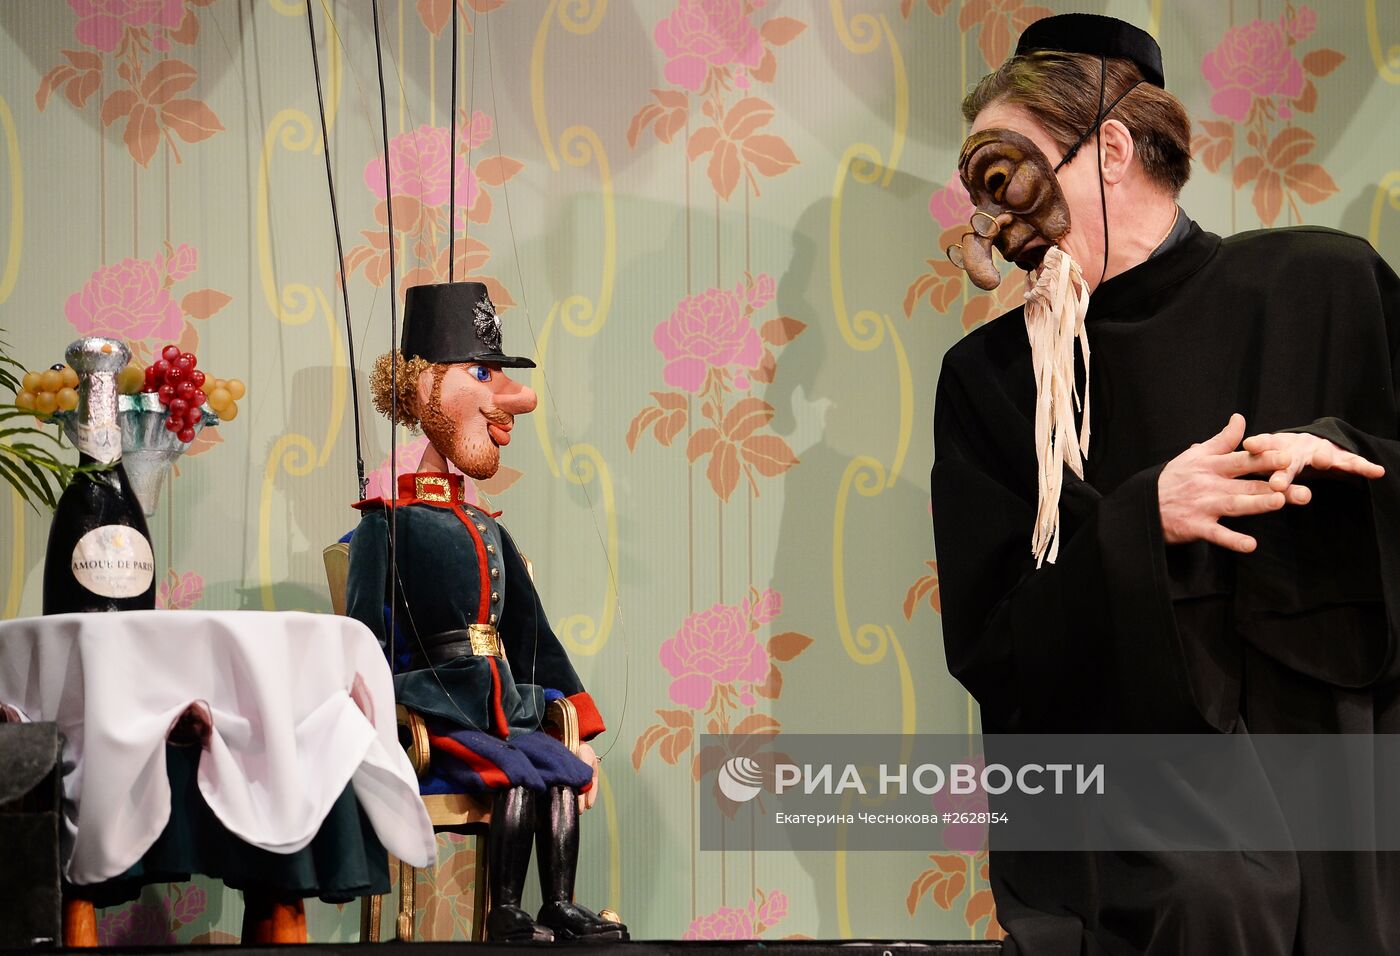 Премьера спектакля по сказке Г.Х. Андерсена "Огниво" в Московском театре кукол